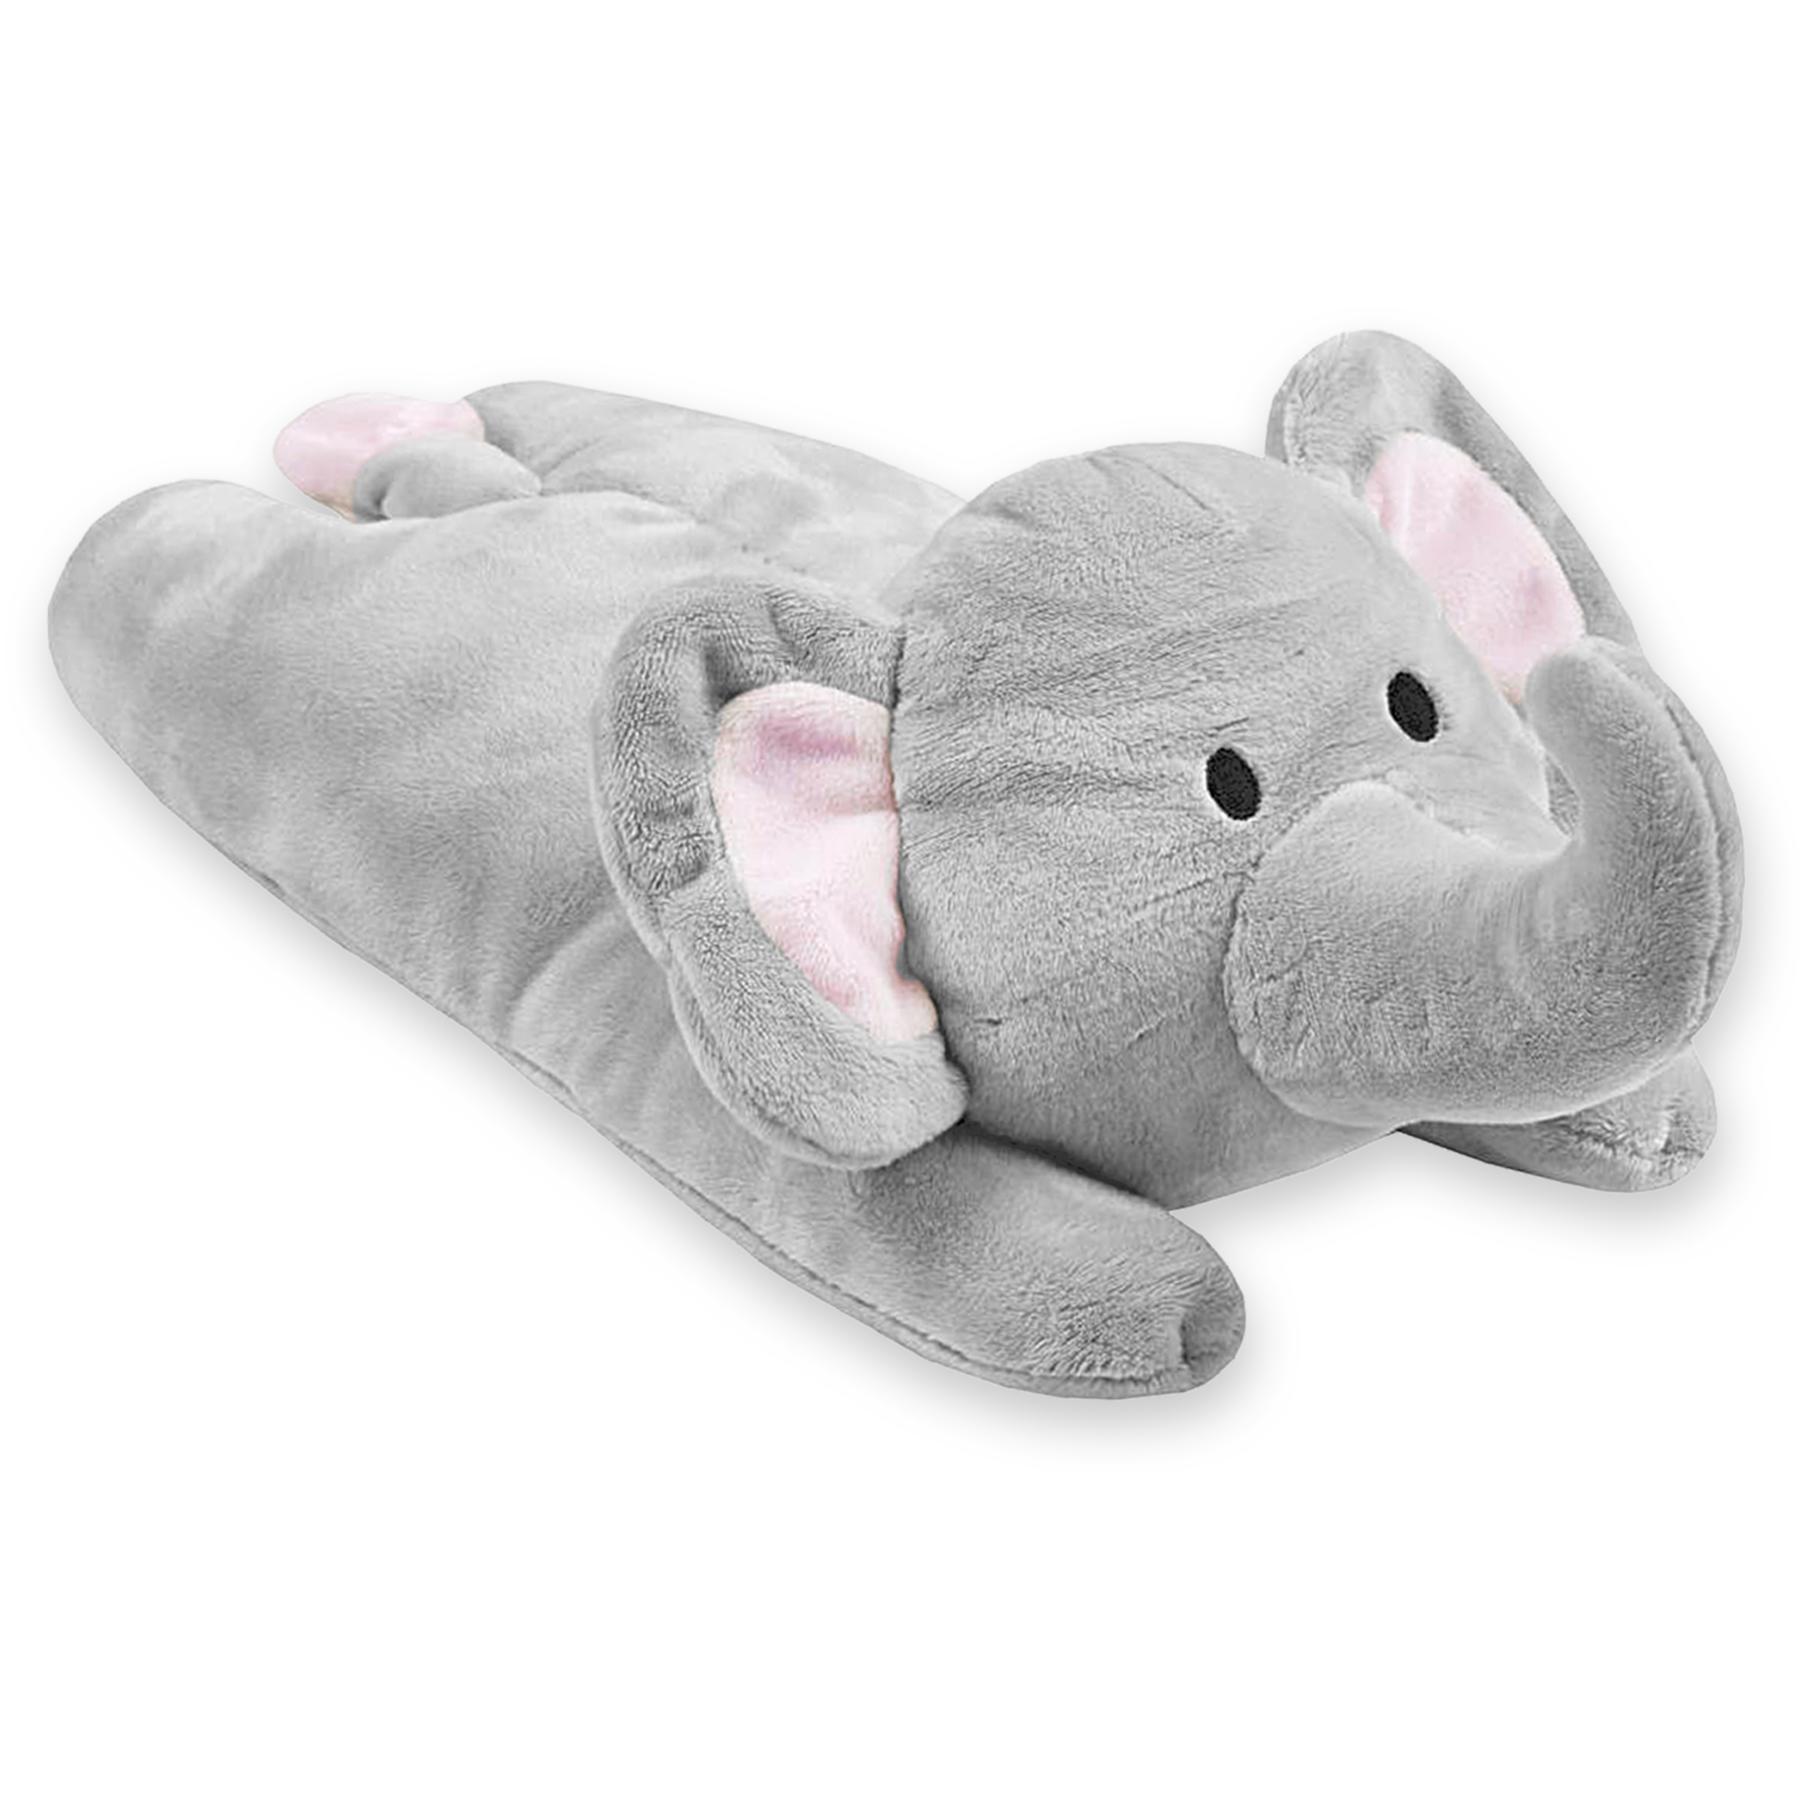 Babytown Pink Fleece Blanket with Elephant Toy